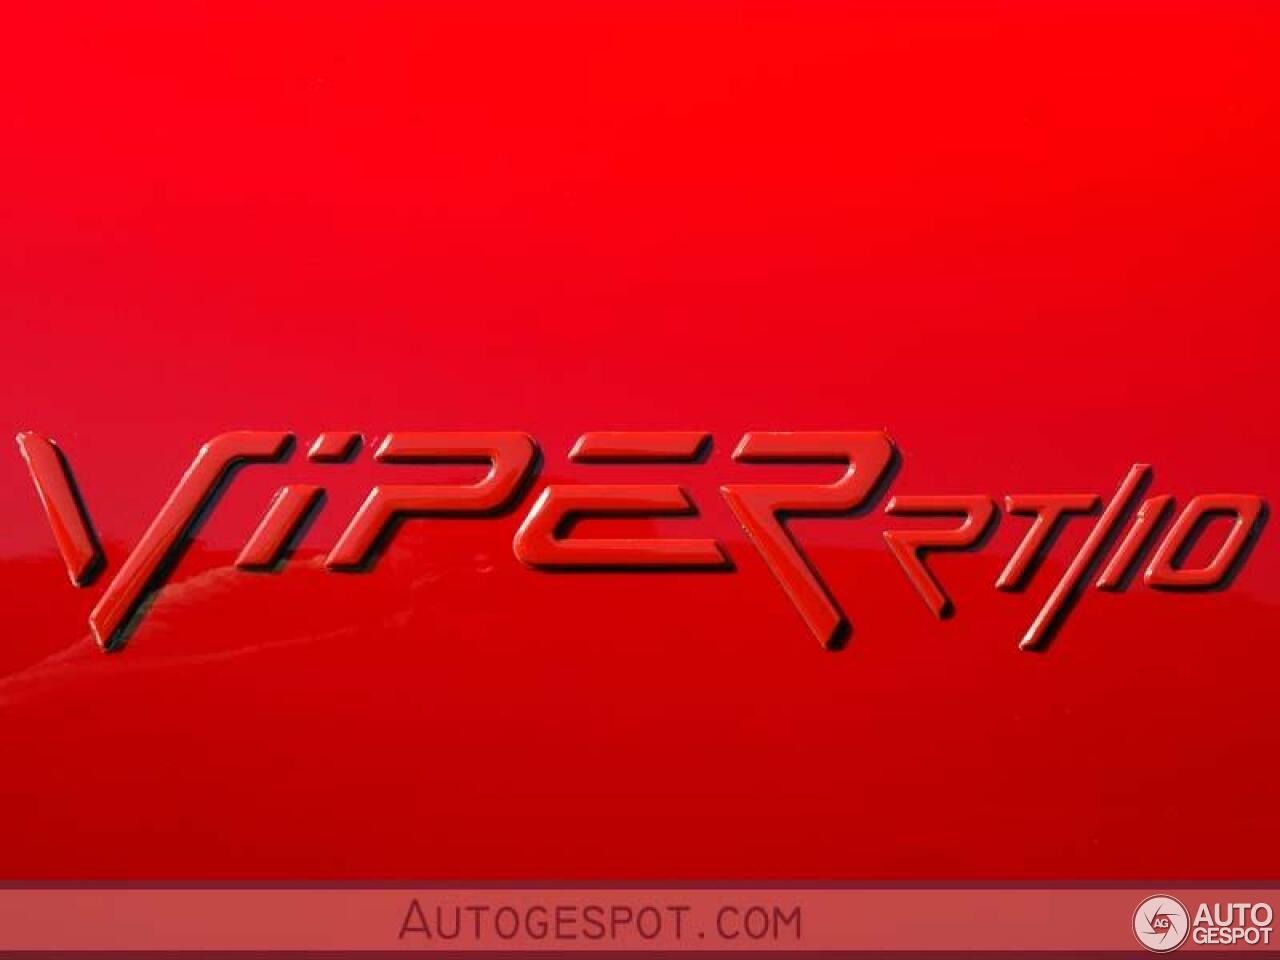 Chrysler Viper RT/10 1992